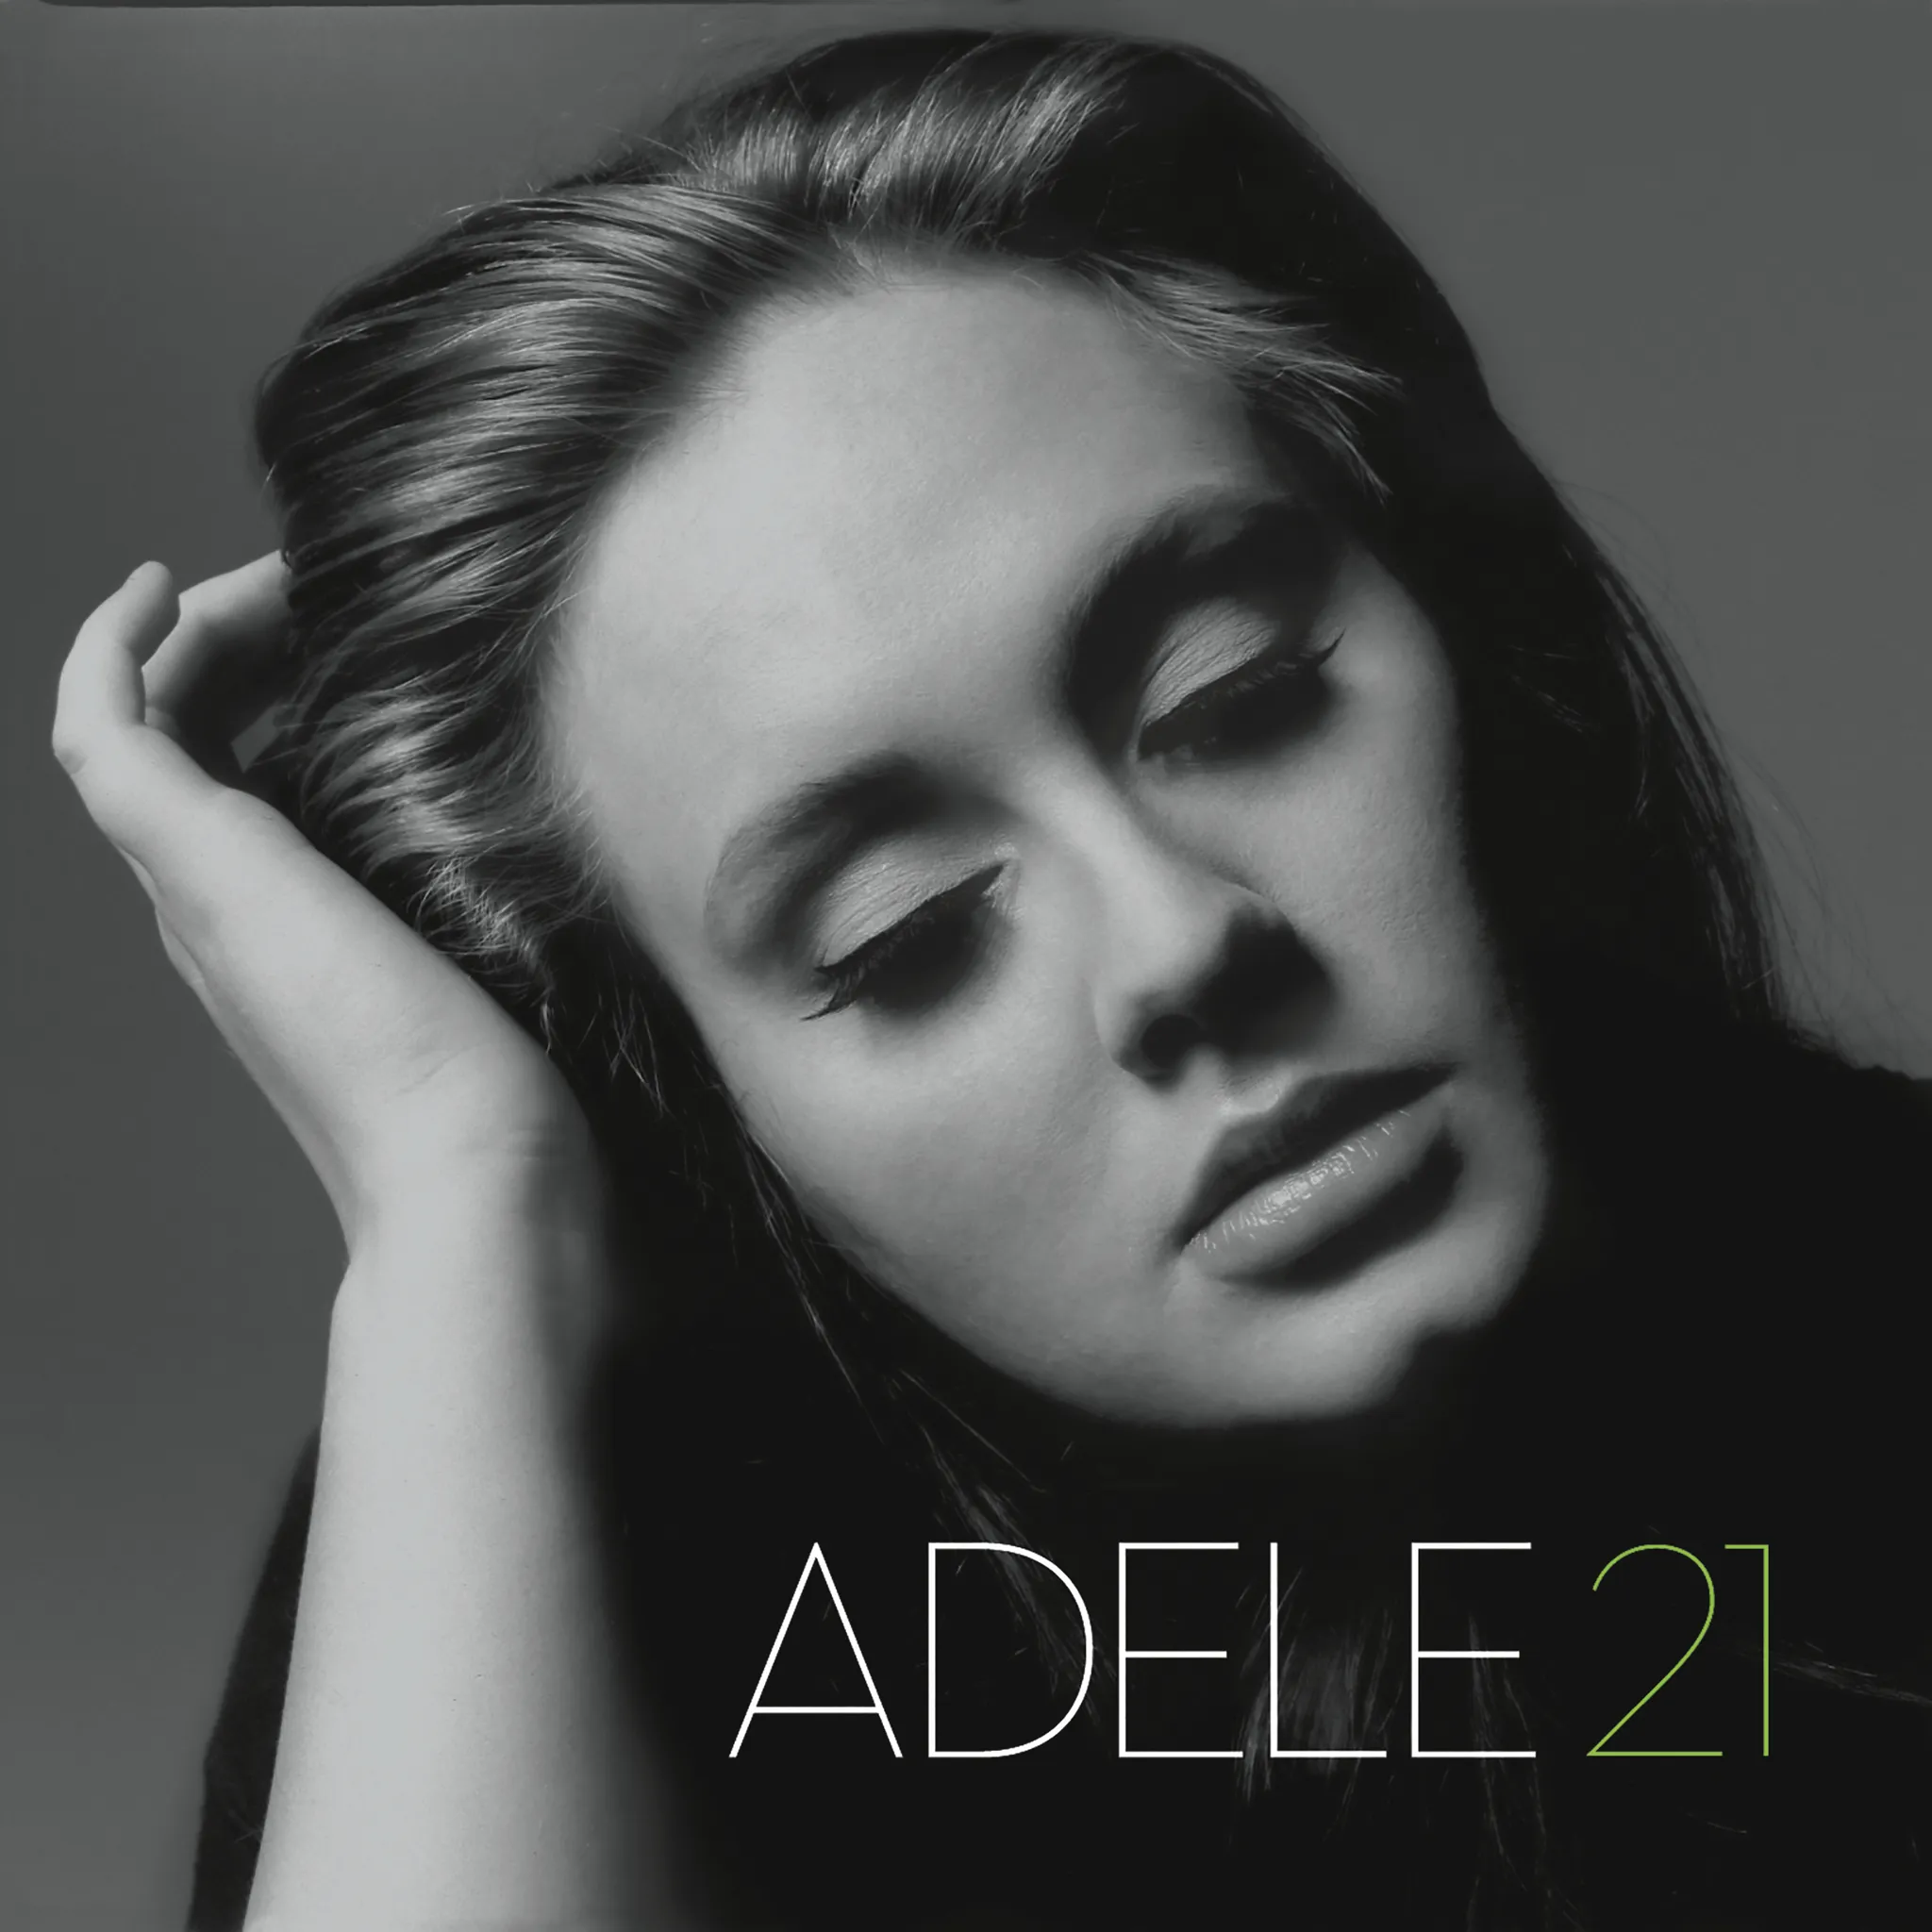 Adele - 21 artwork